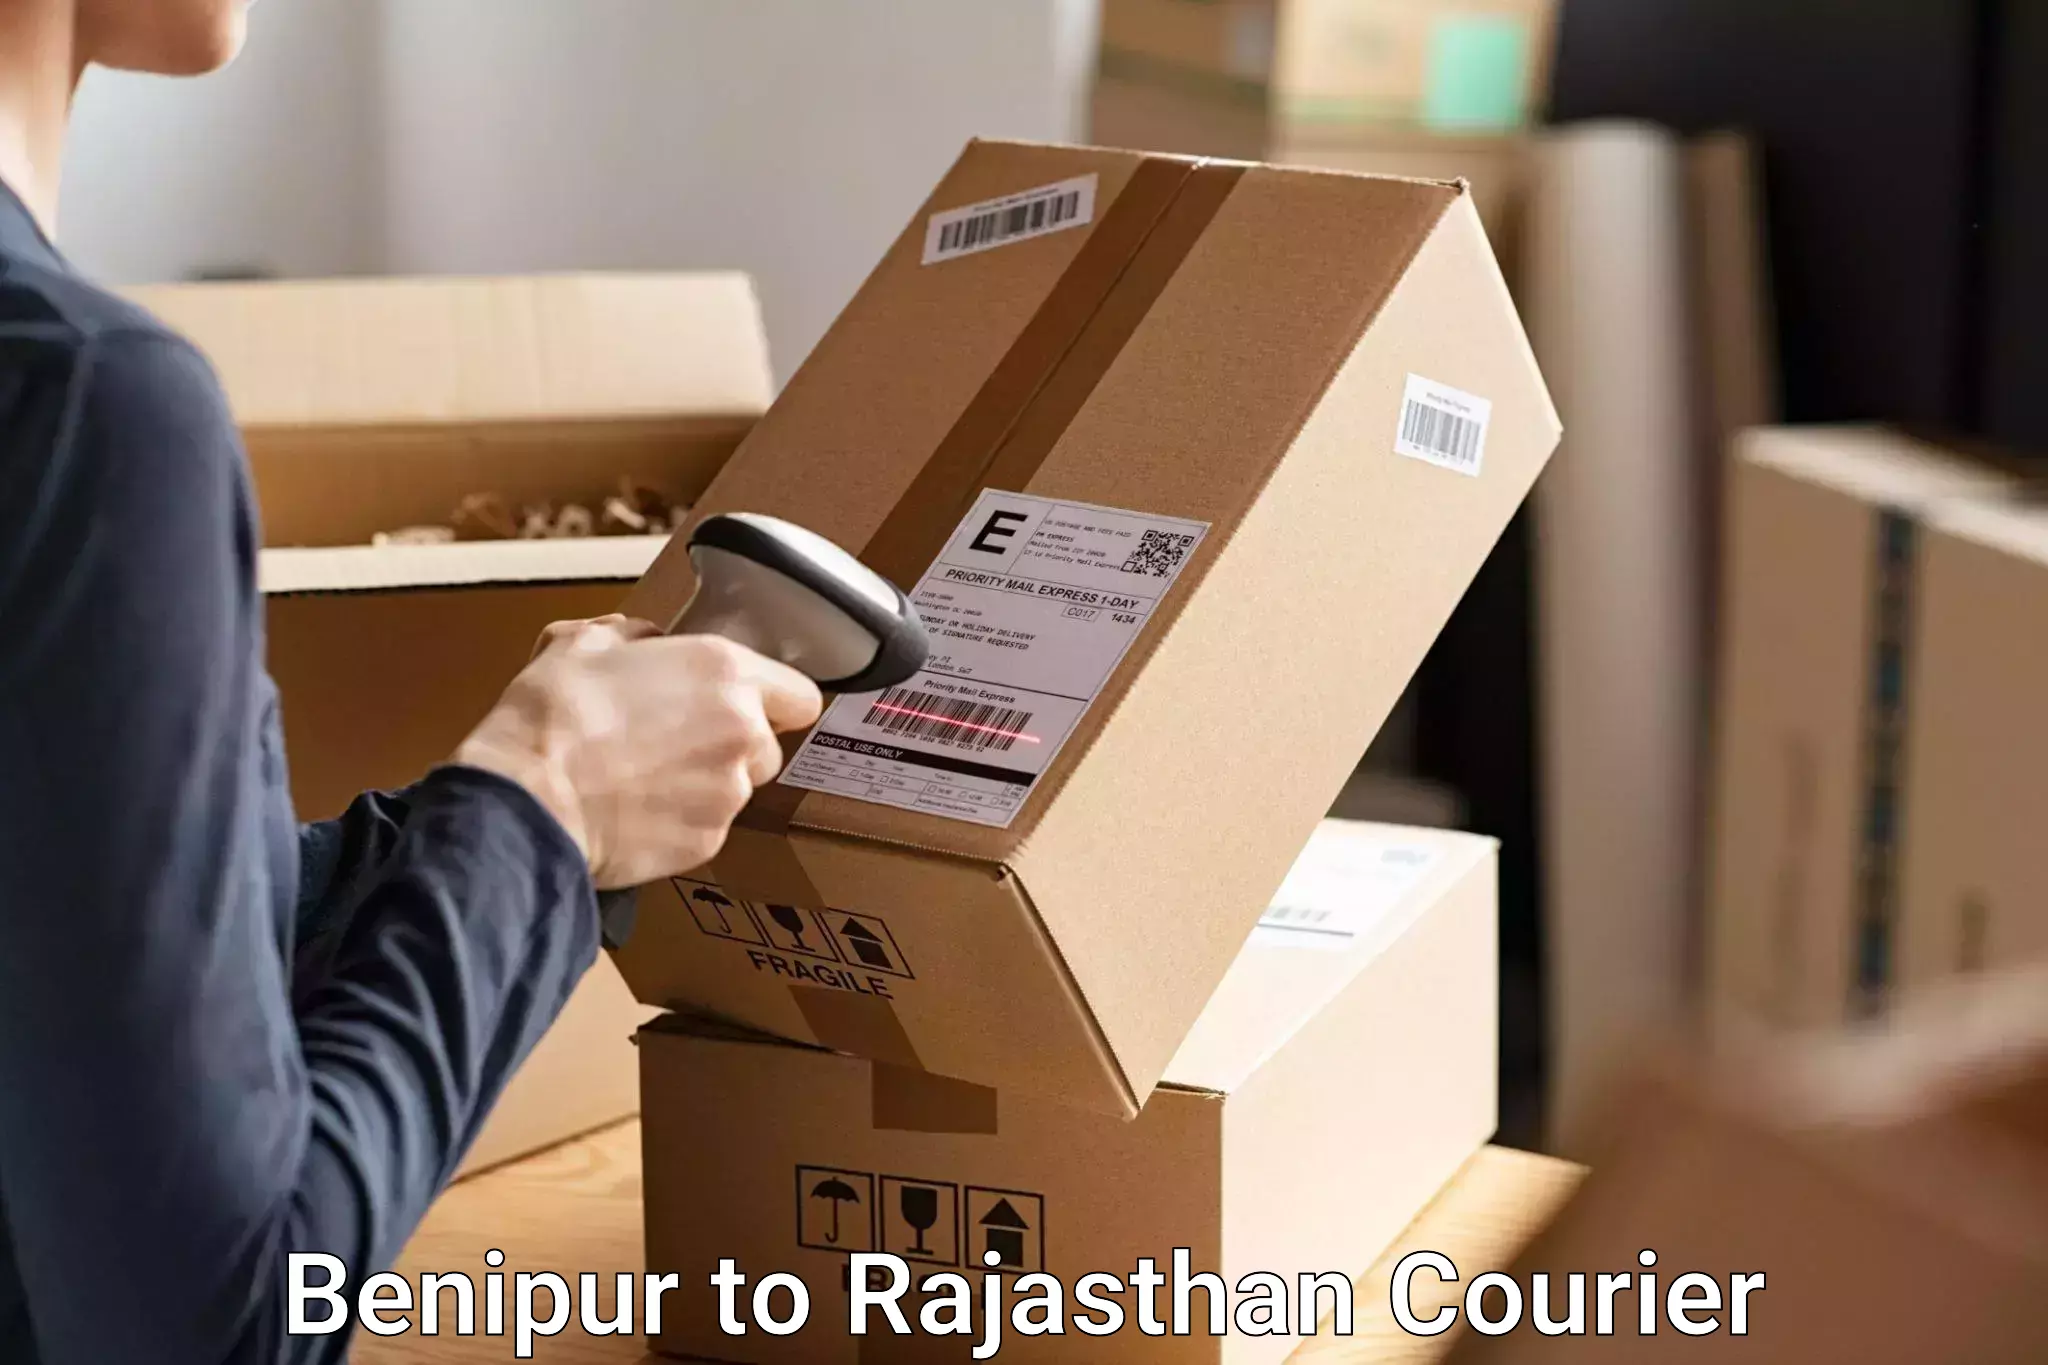 Luggage transport service Benipur to Rajasthan